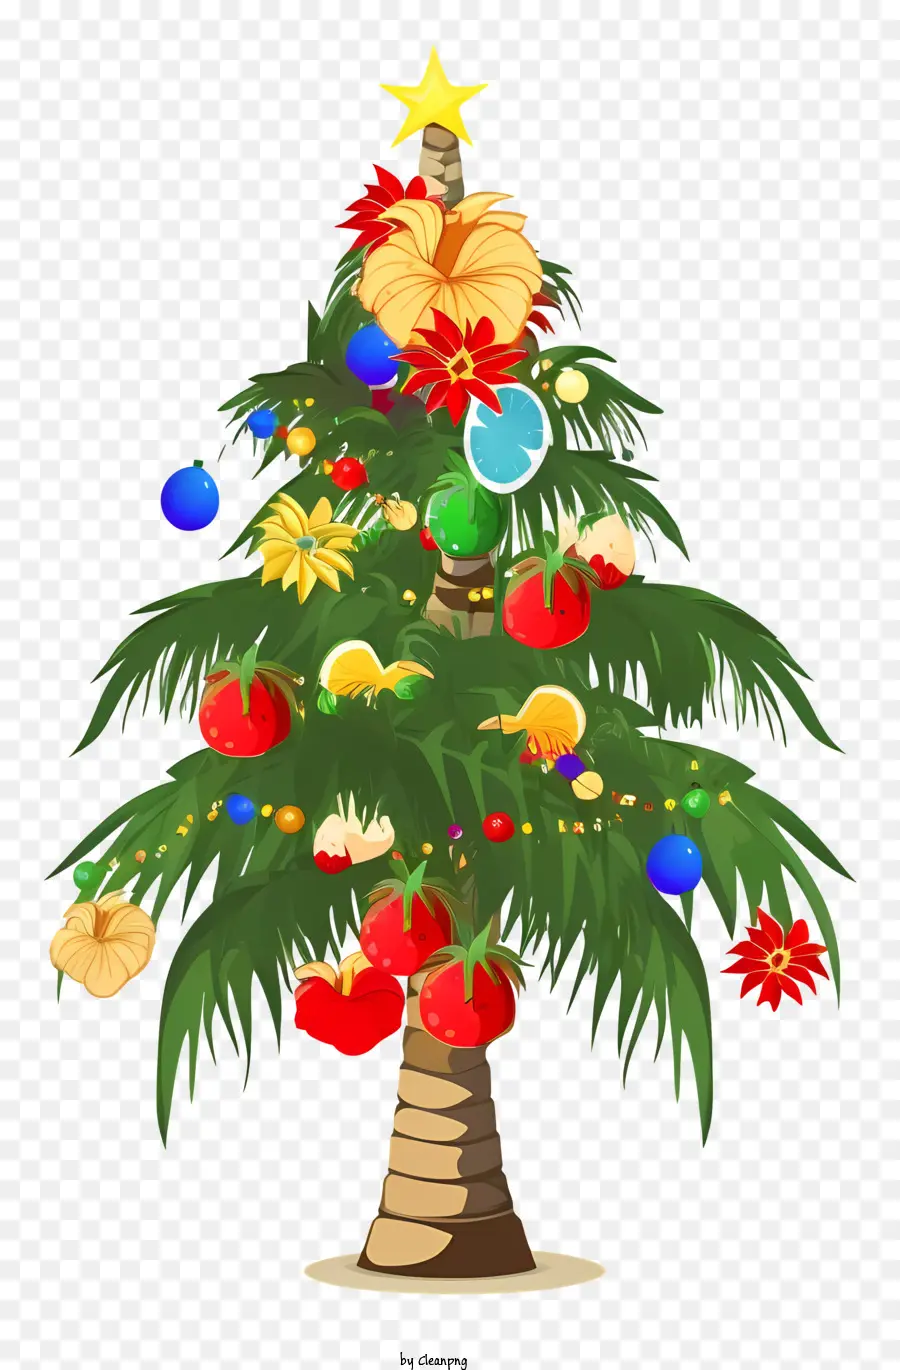 Weihnachtsbaum - Buntes Weihnachtsbaum mit verschiedenen Dekorationen